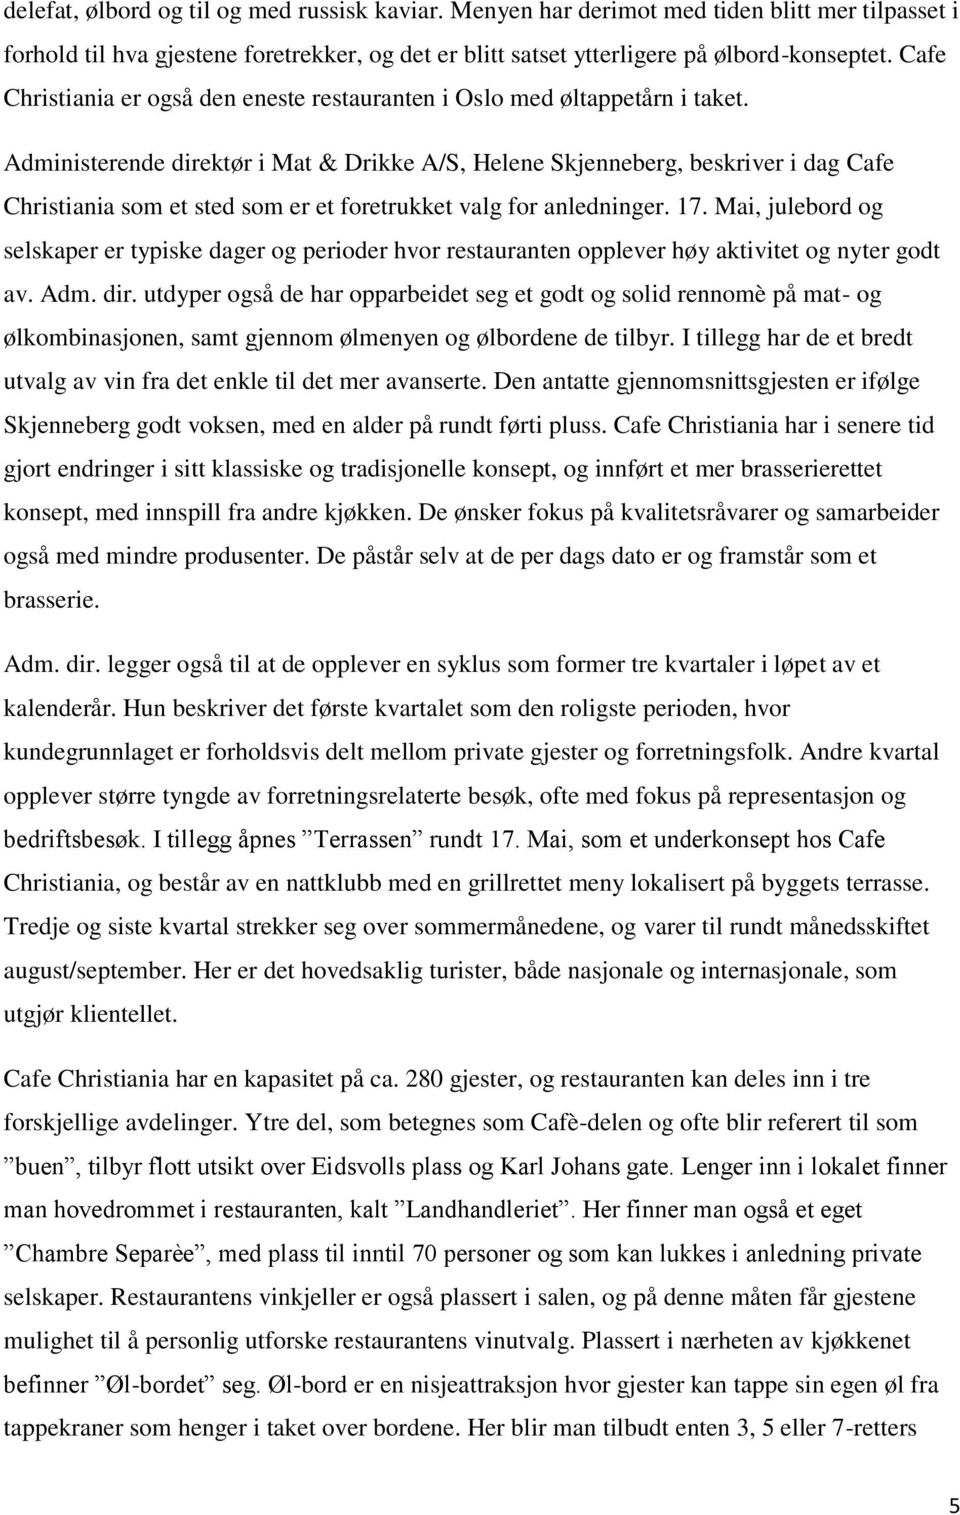 Administerende direktør i Mat & Drikke A/S, Helene Skjenneberg, beskriver i dag Cafe Christiania som et sted som er et foretrukket valg for anledninger. 17.